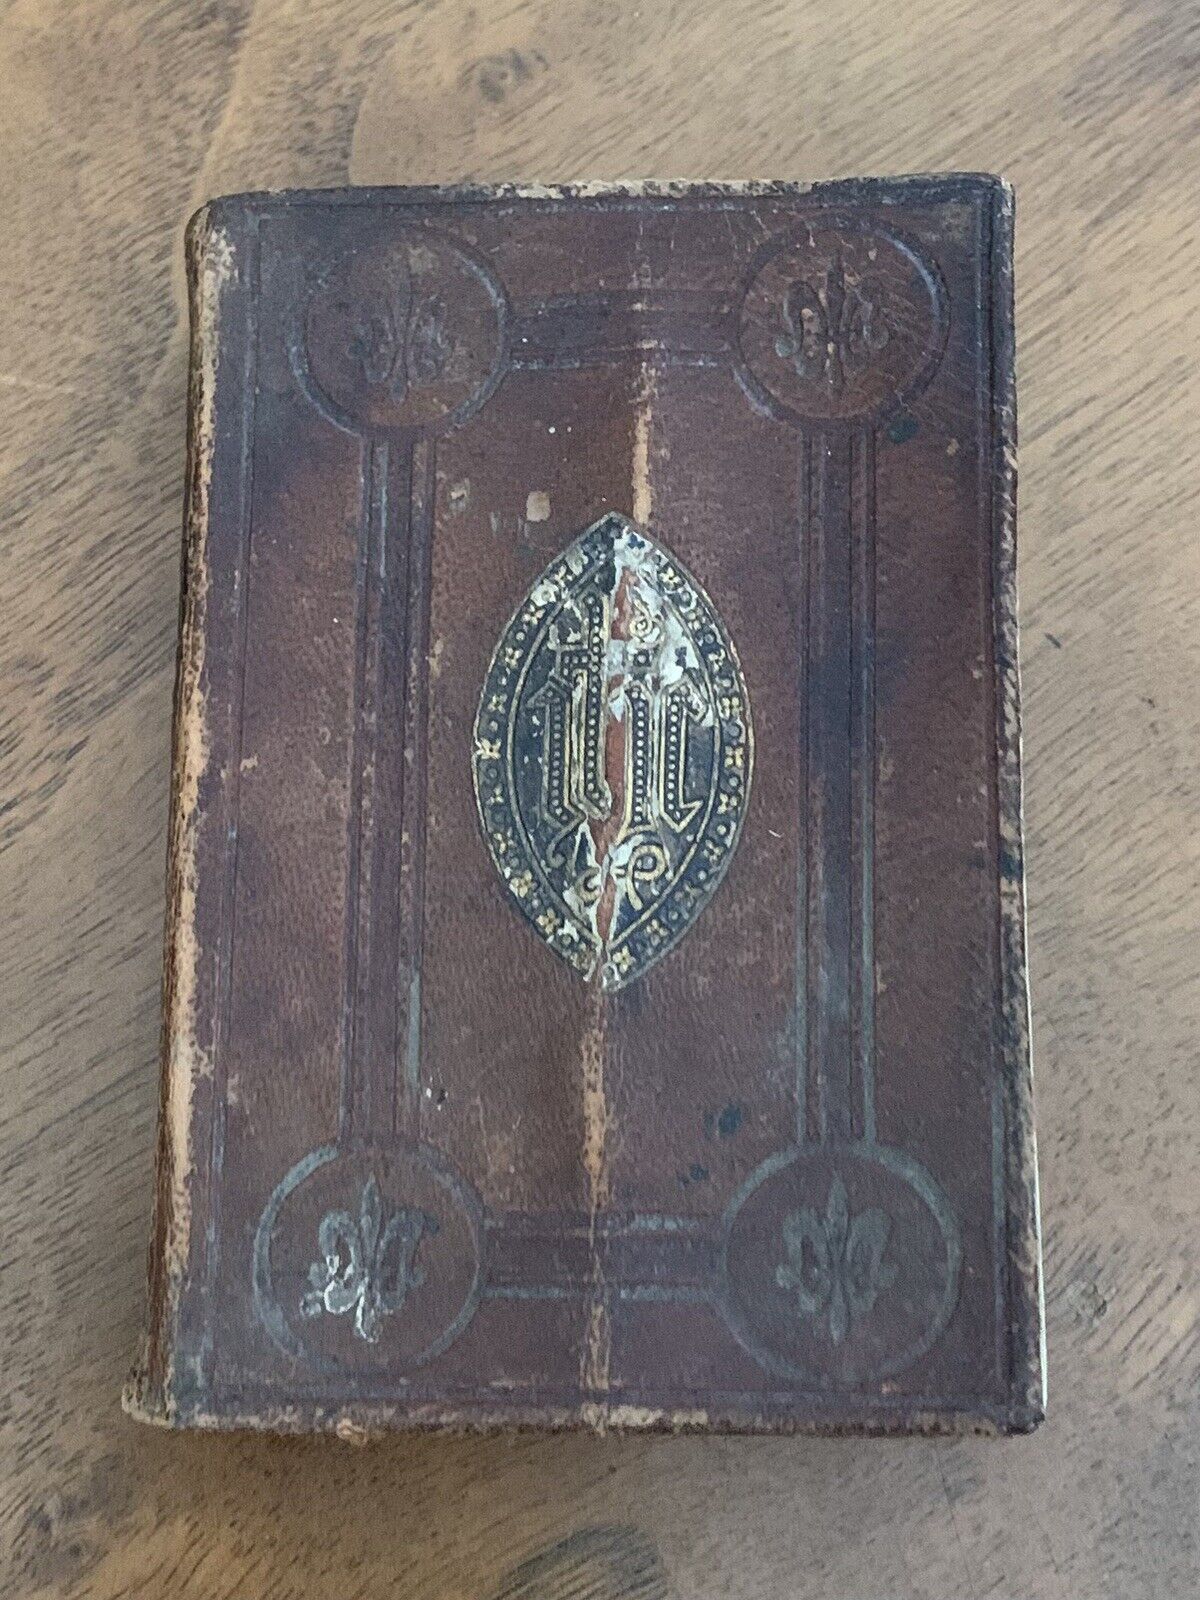 Antique Oxford New Testament Pocket Size Bible #42 est. 1882